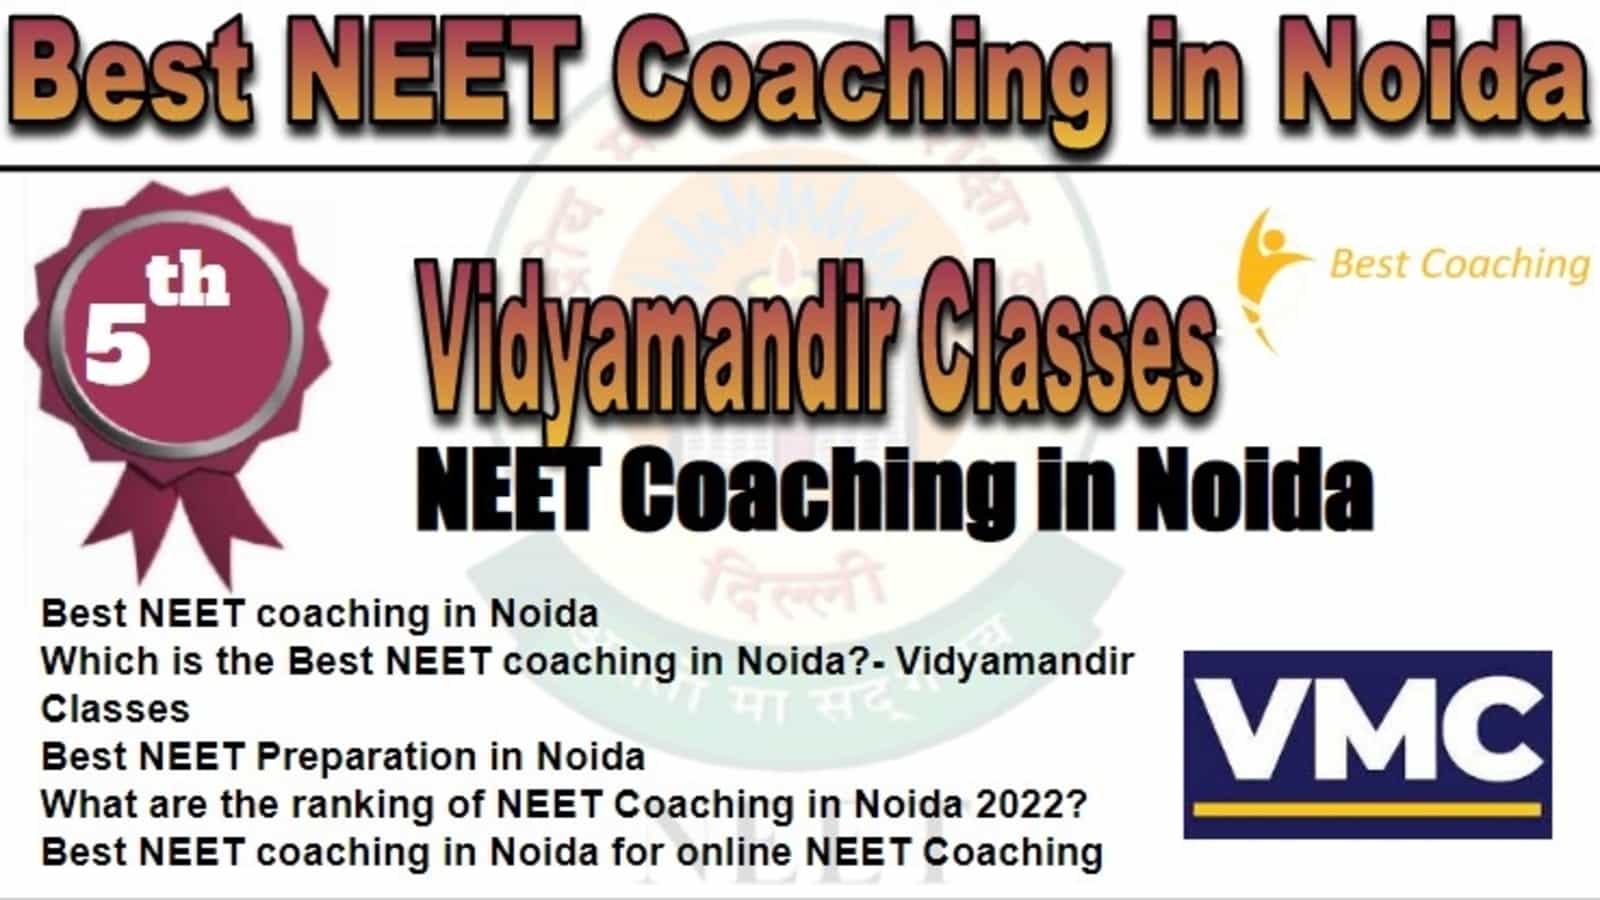 Rank 5 Best NEET Coaching in Noida